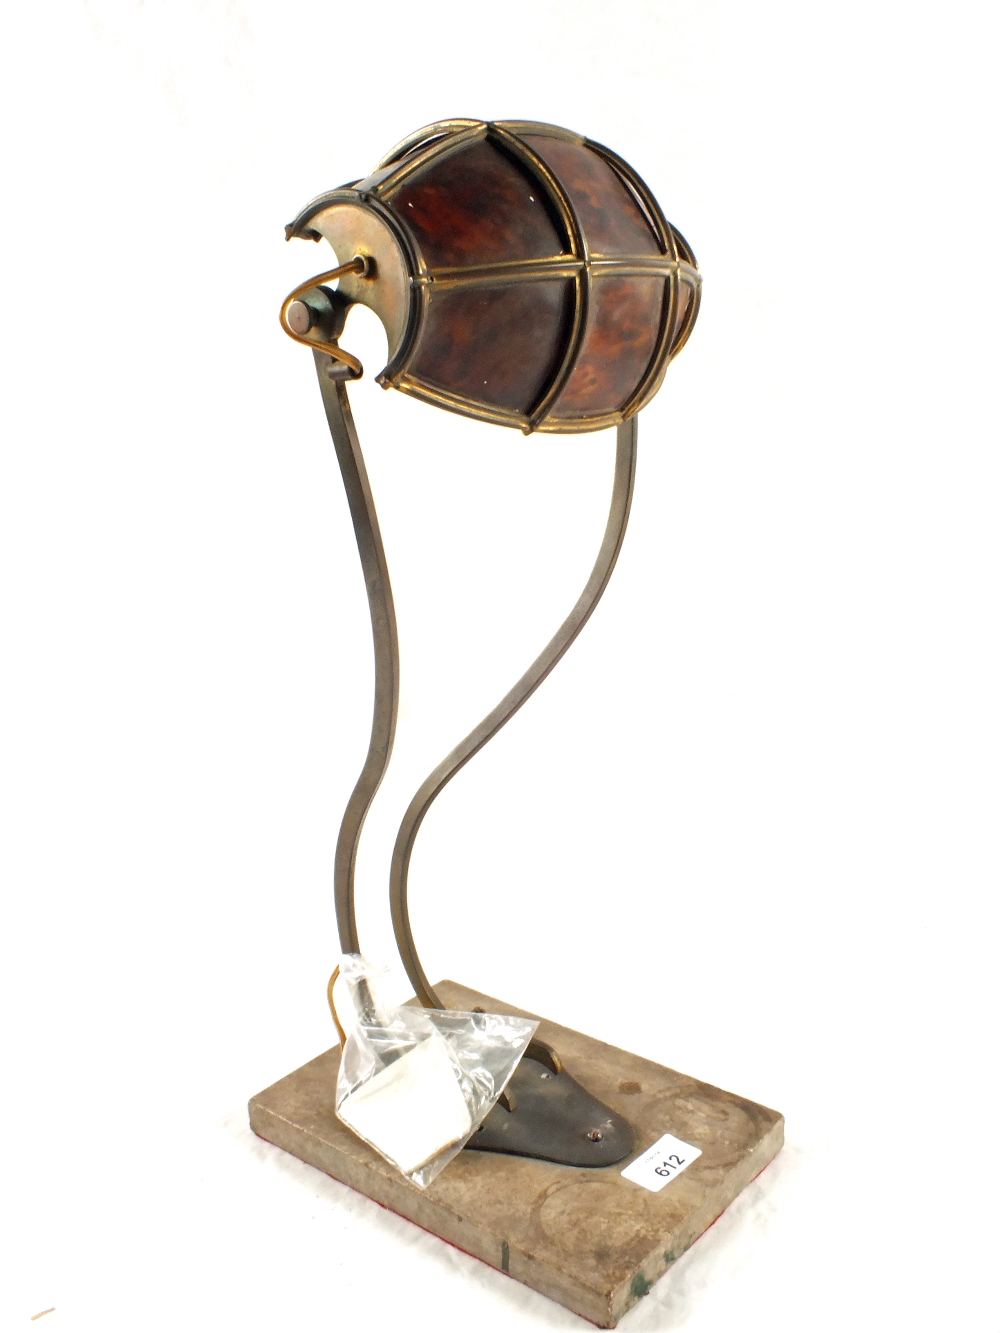 An Art Nouveau Brass desk lamp with tortoiseshell shade